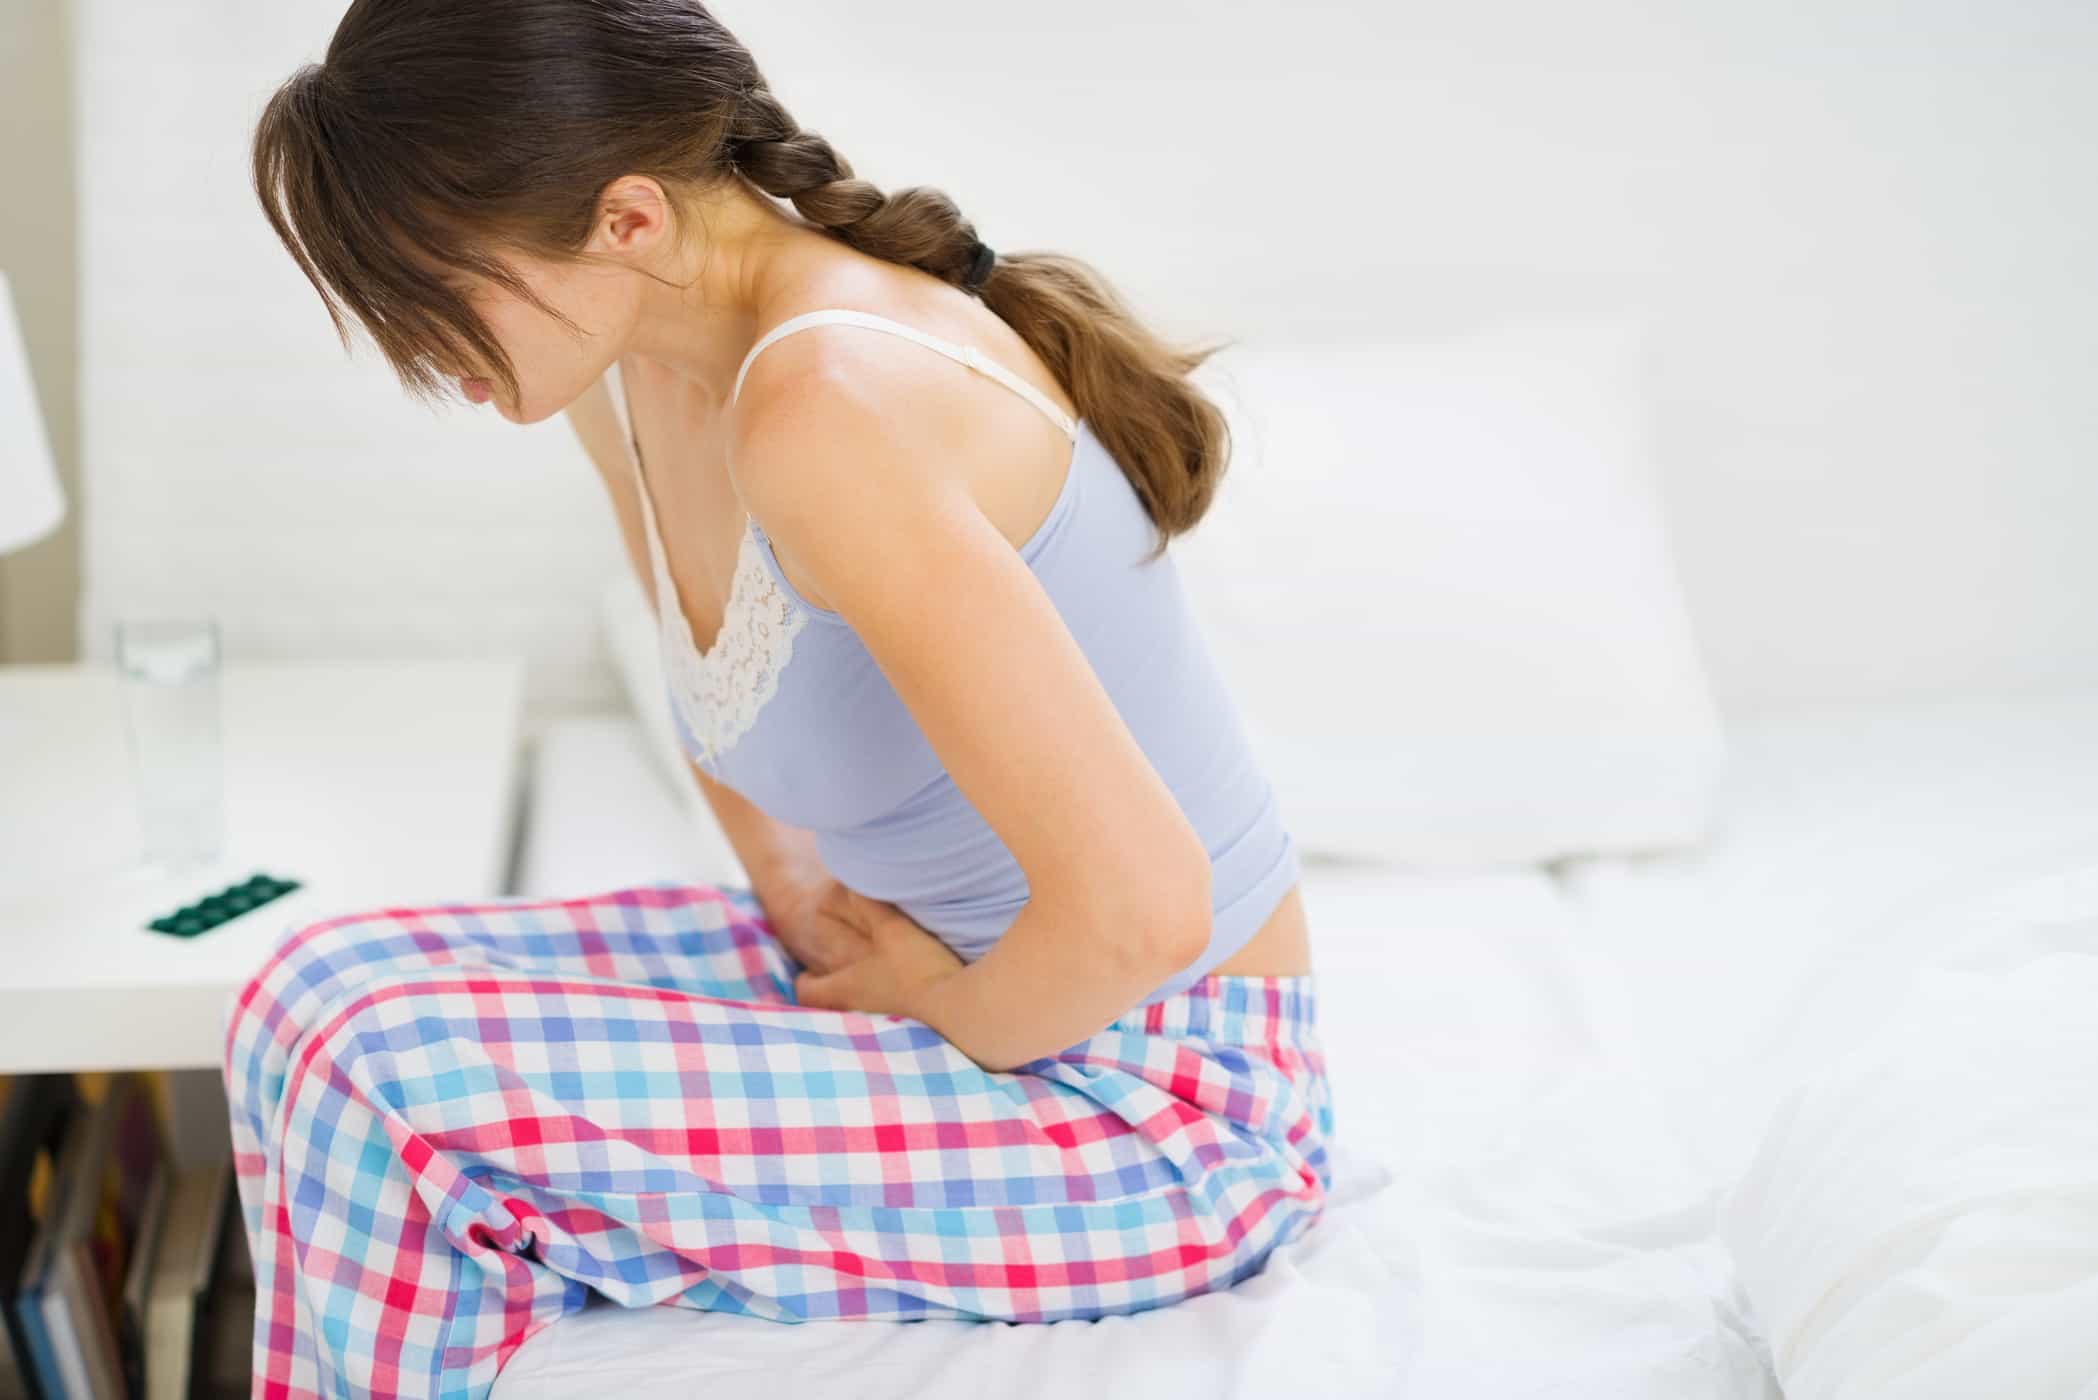 6 Menstruationsbeschwerden, die von einem Arzt überprüft werden sollten, und mögliche Ursachen